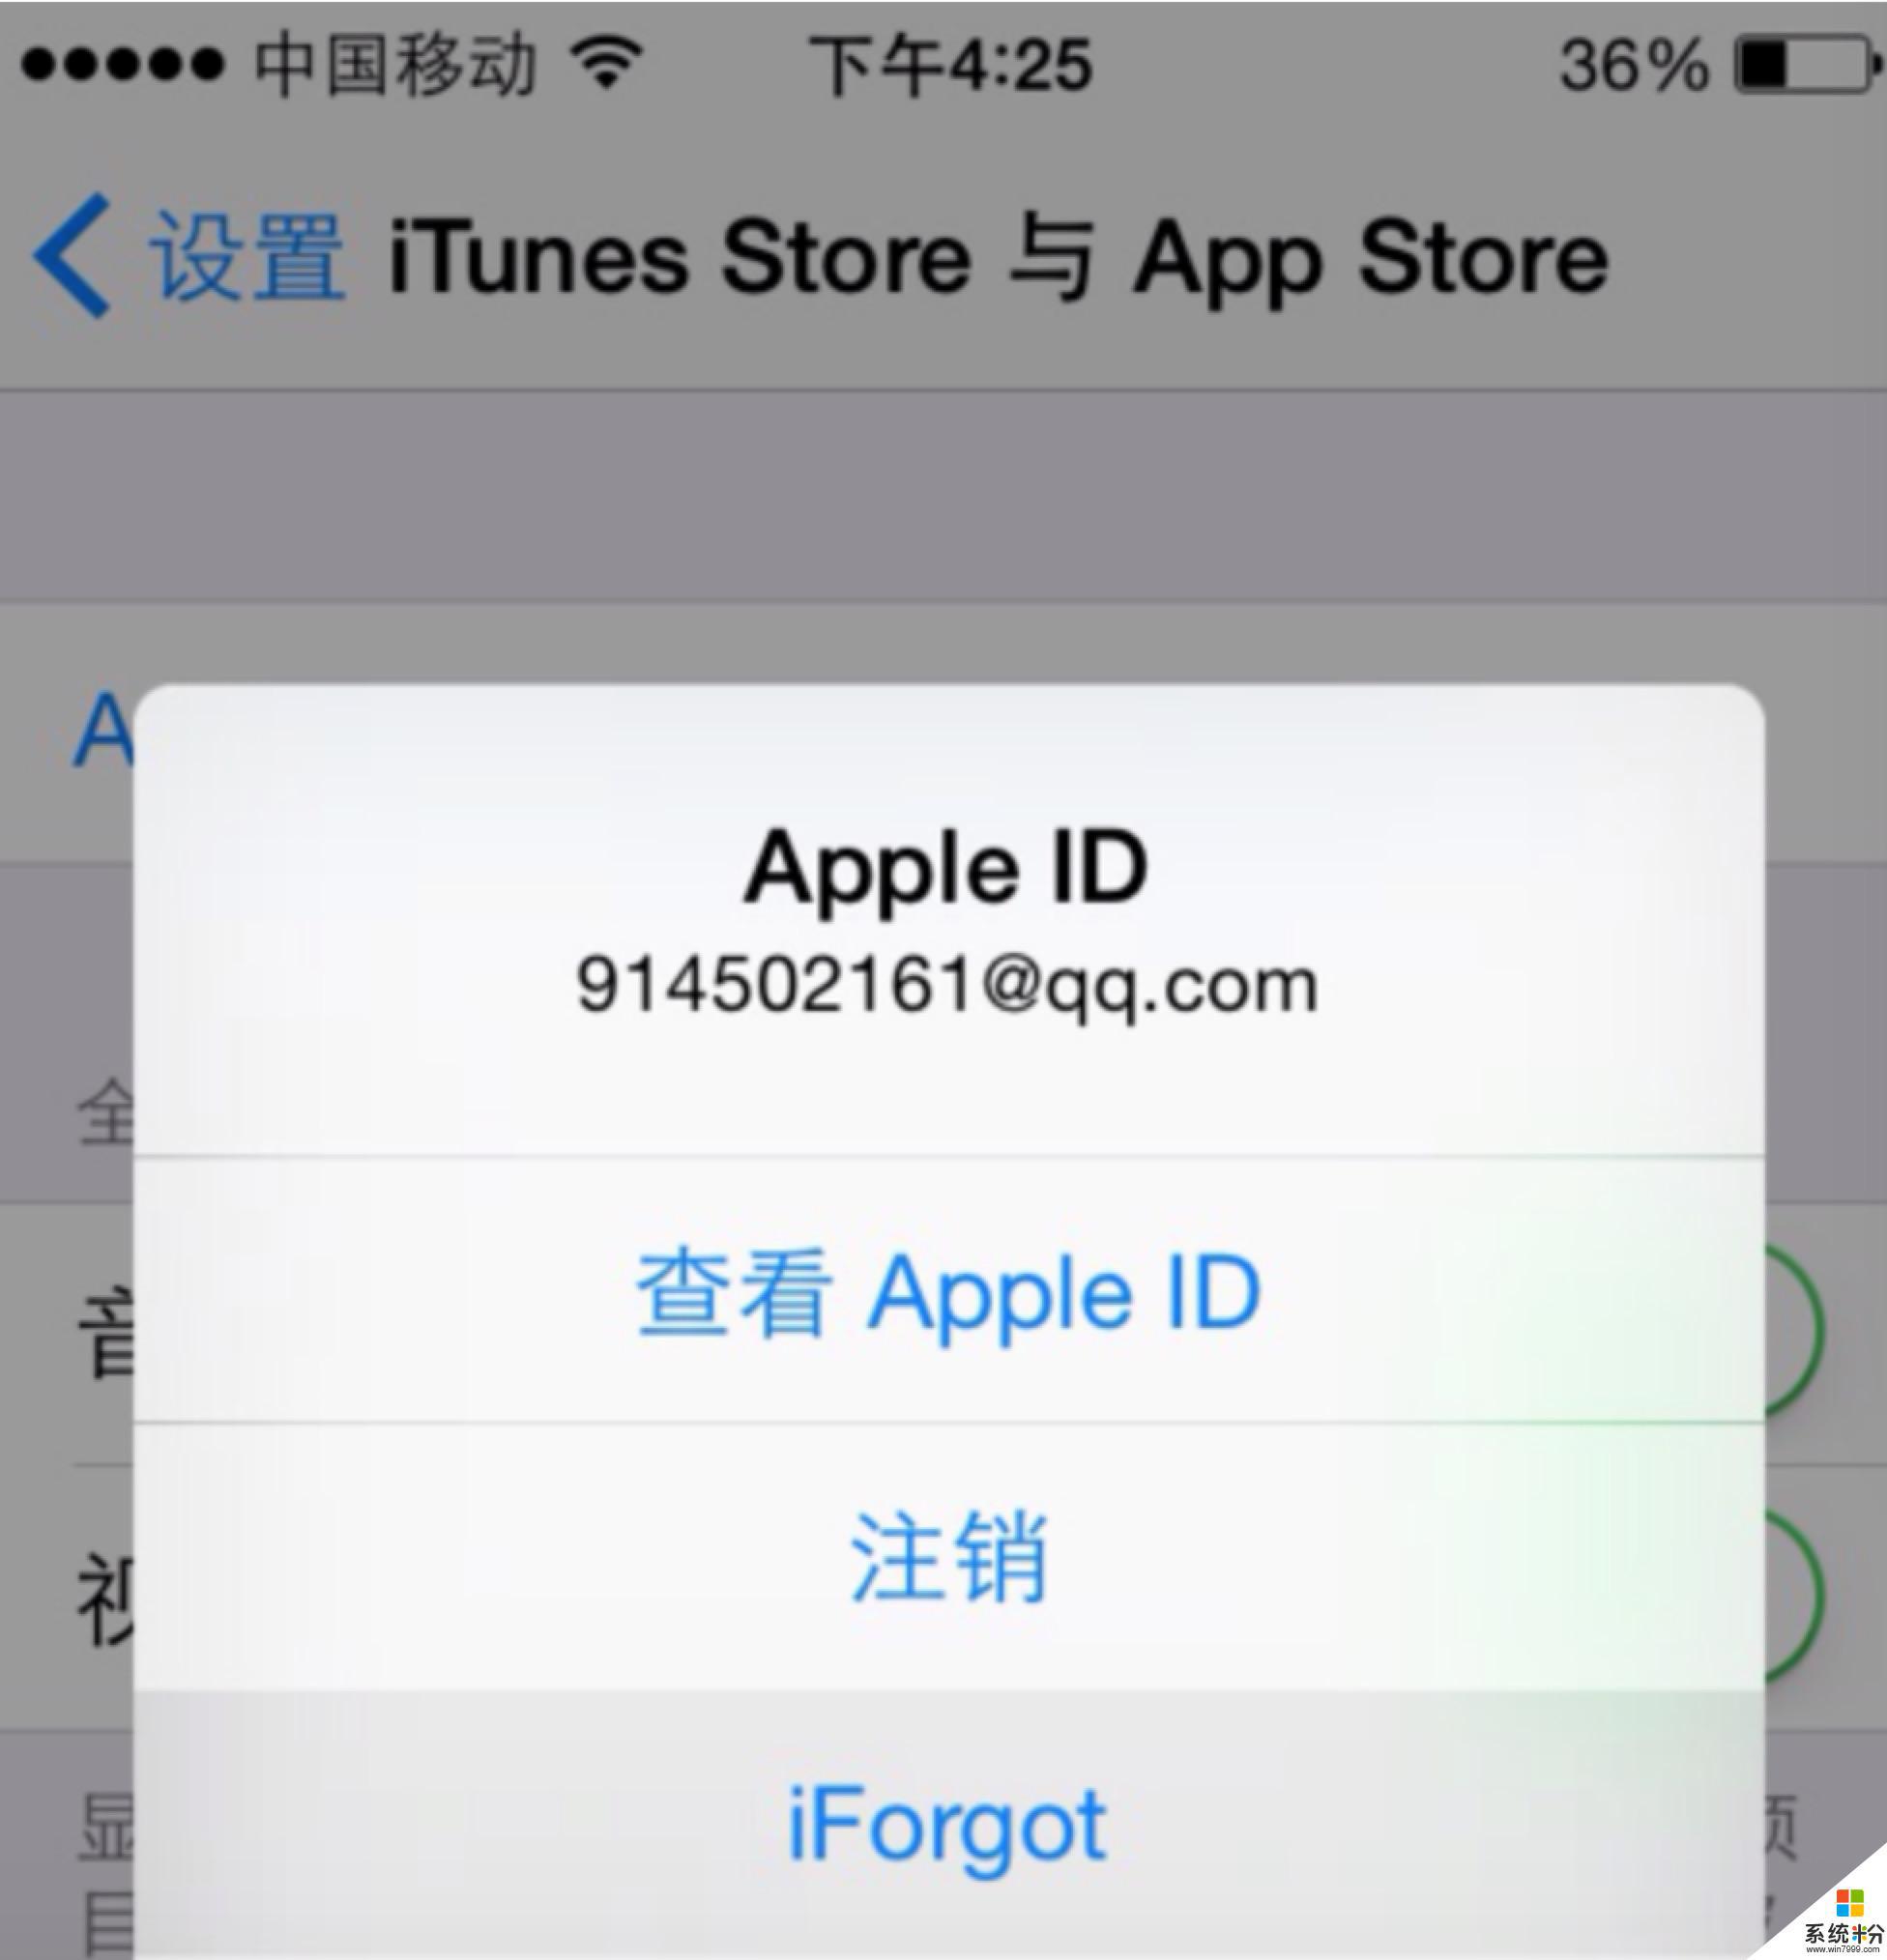 苹果手机刷机后知道ID号,忘记ID密码了,怎么用另一台手机找回密码?